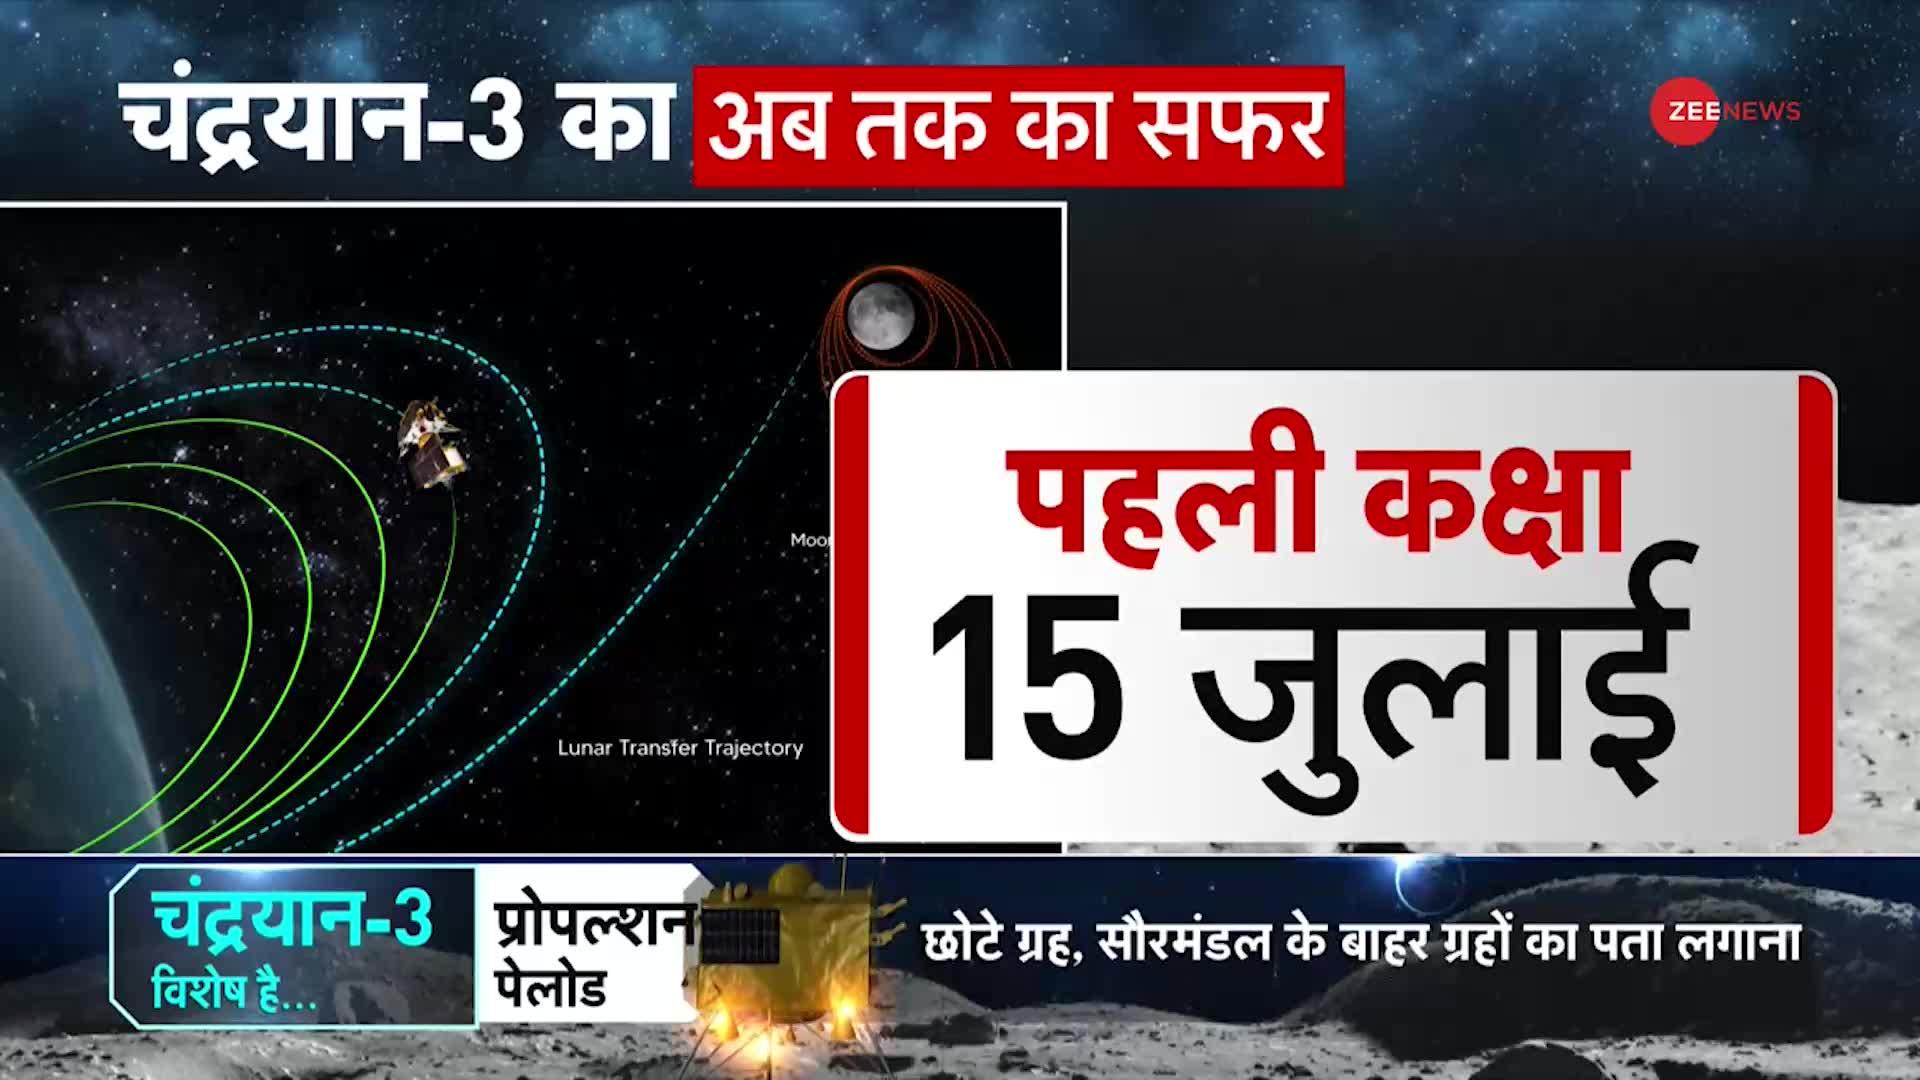 Chandrayaan-3 Launching: थोड़ी देर में ऑर्बिट बदलेगा चंद्रयान-3, पांचवीं कक्षा में पहुंचेगा चंद्रयान